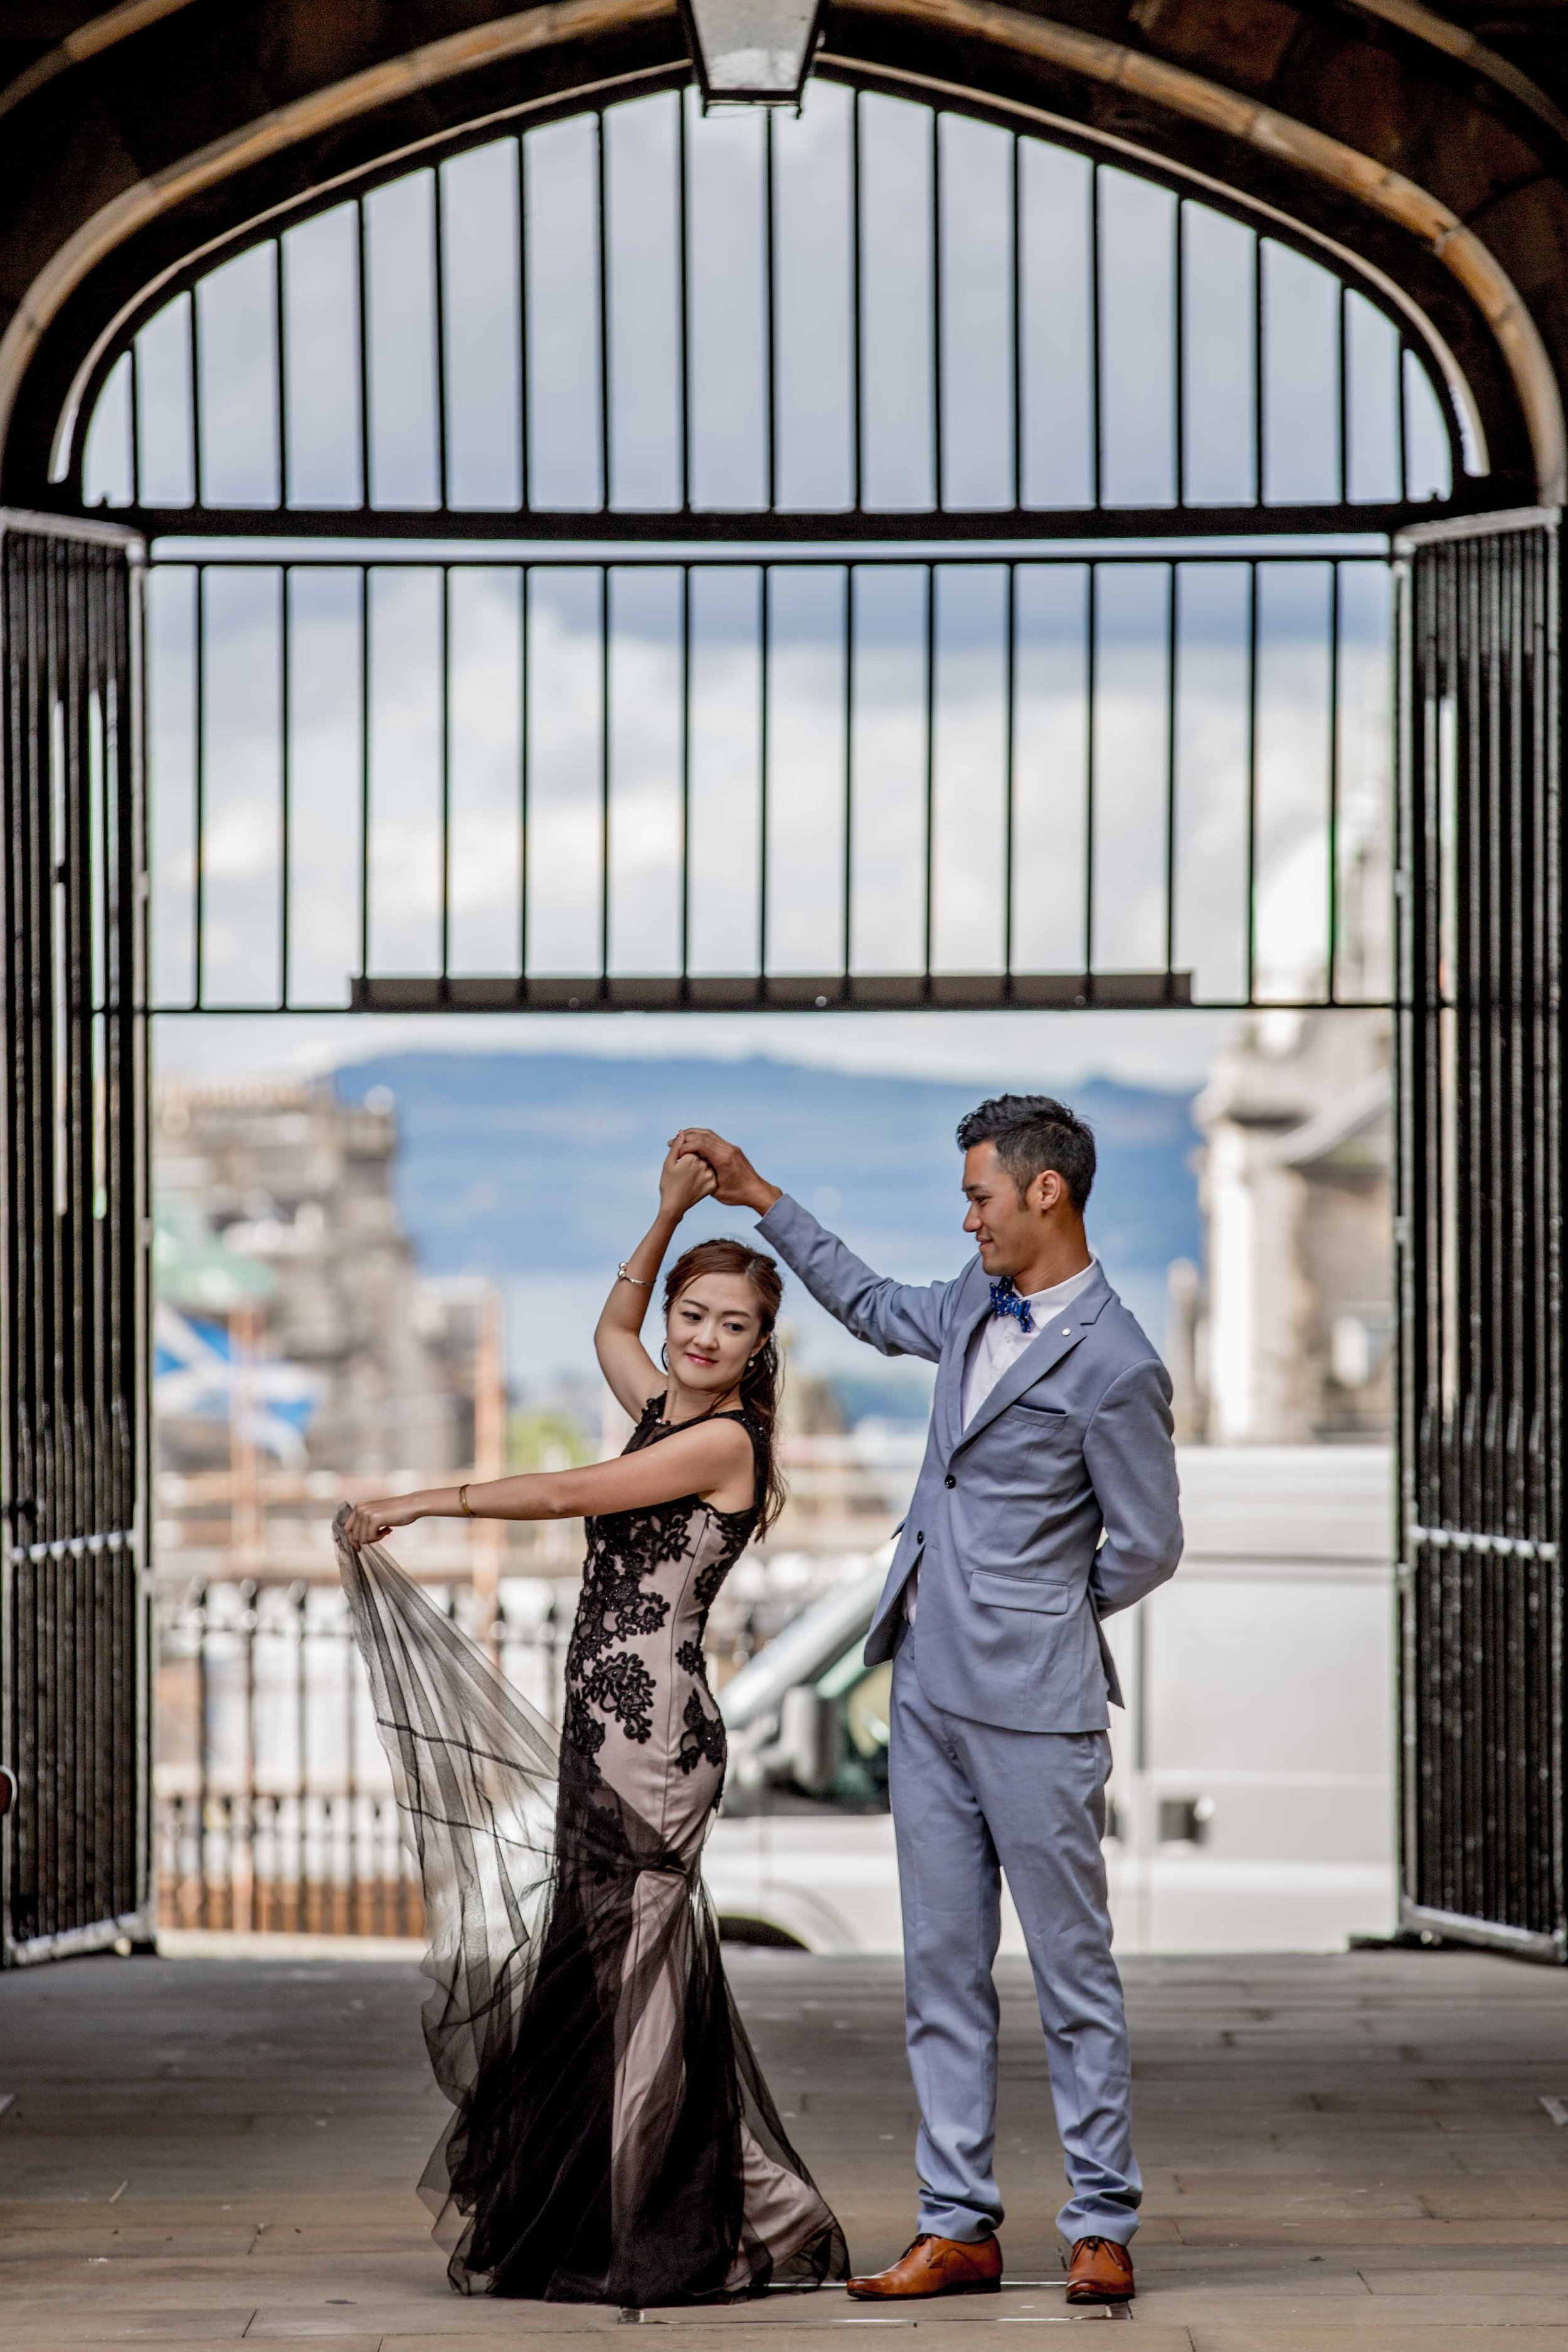 婚紗攝影倫敦英國-婚纱摄影伦敦英国-Chinese- pre-wedding-engagement-shoot-photoshoot-London-edinburgh-destination-wedding-photographer-hong-kong-natalia-smith-photography-32.jpg